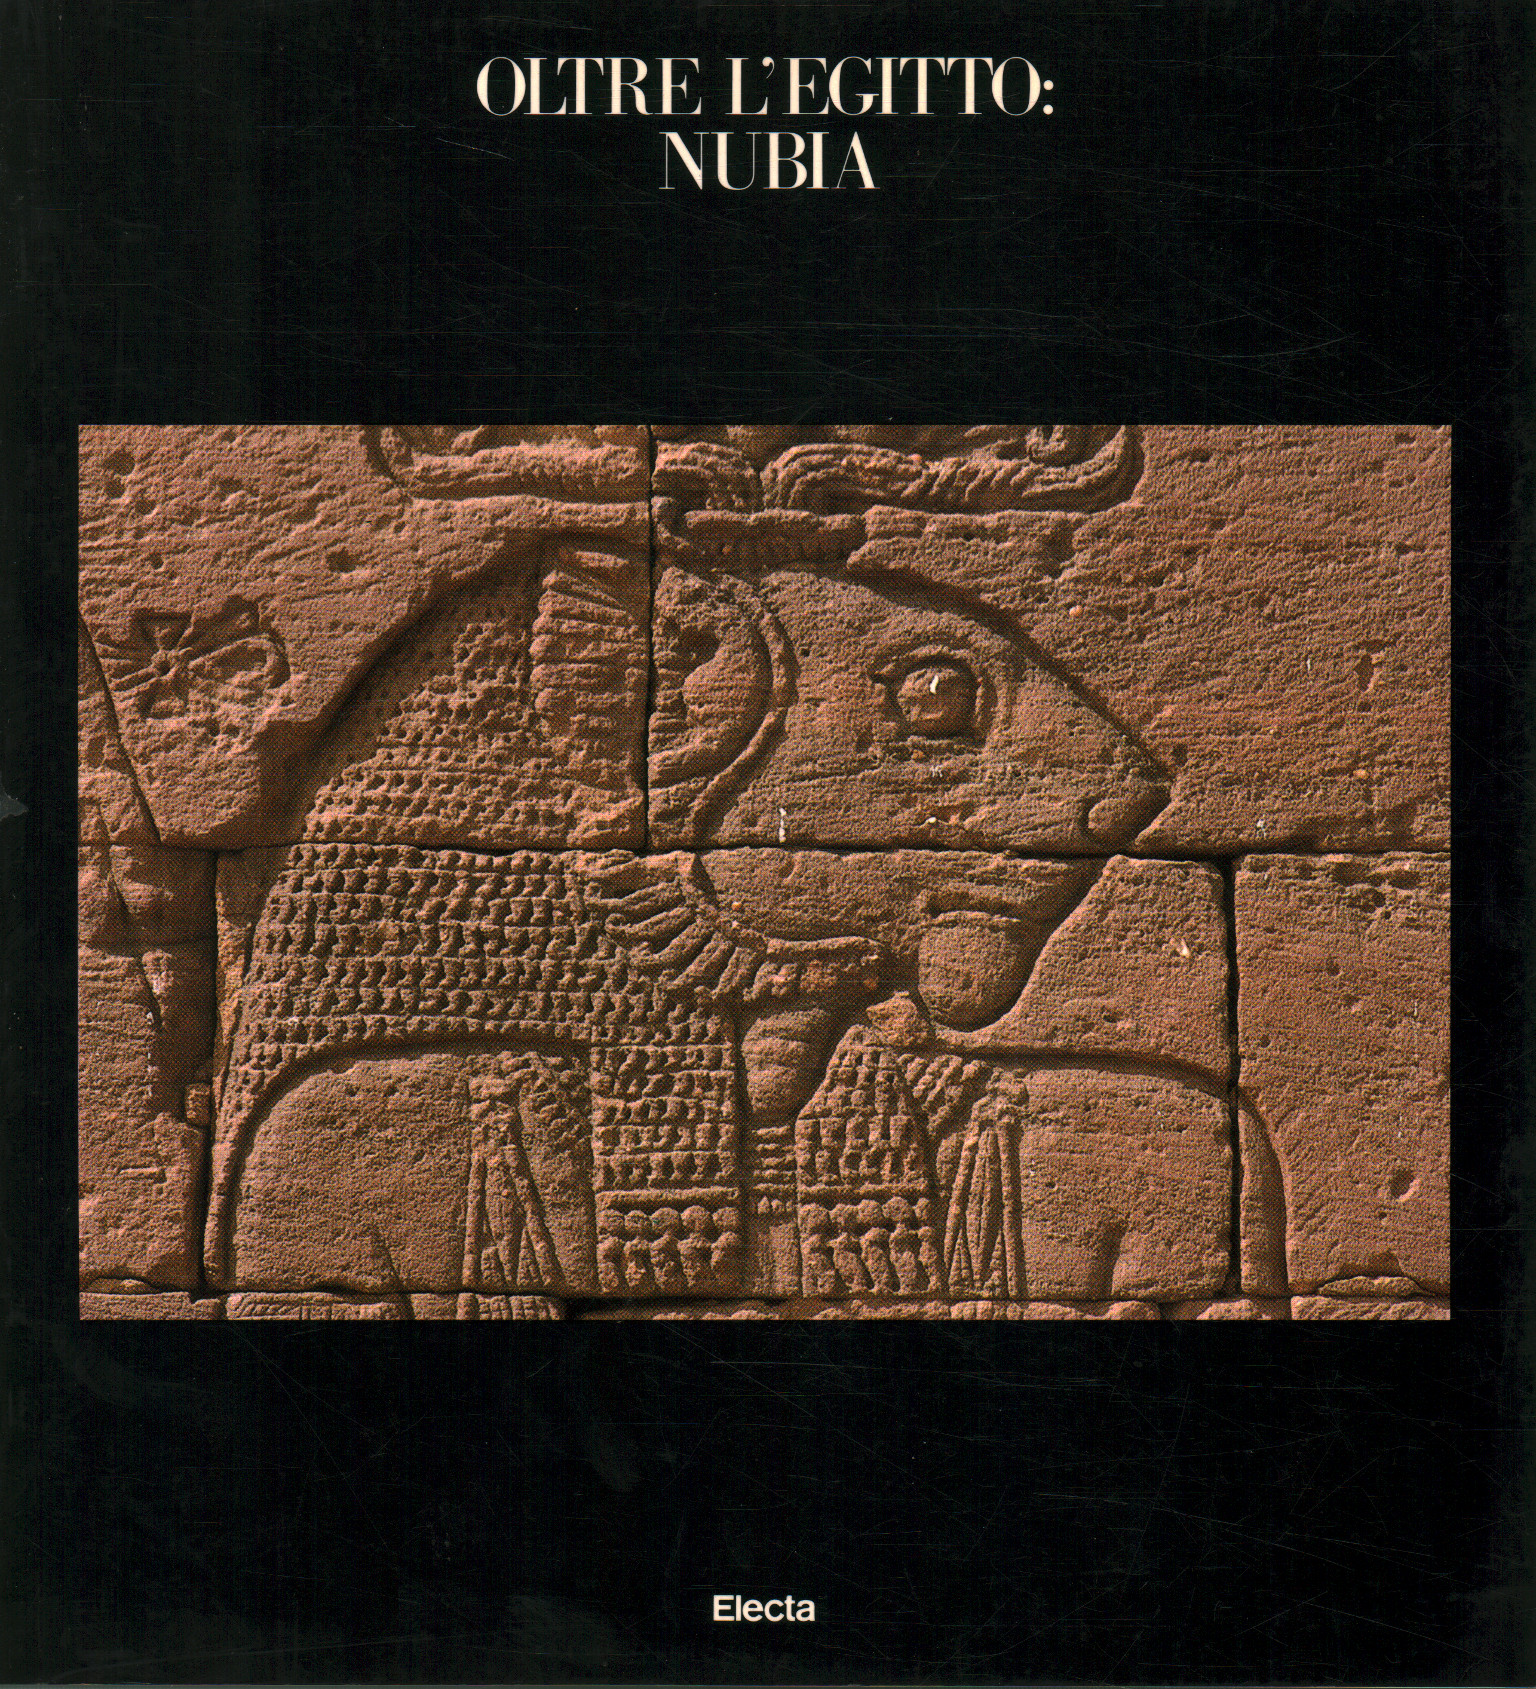 Beyond Egypt: Nubia